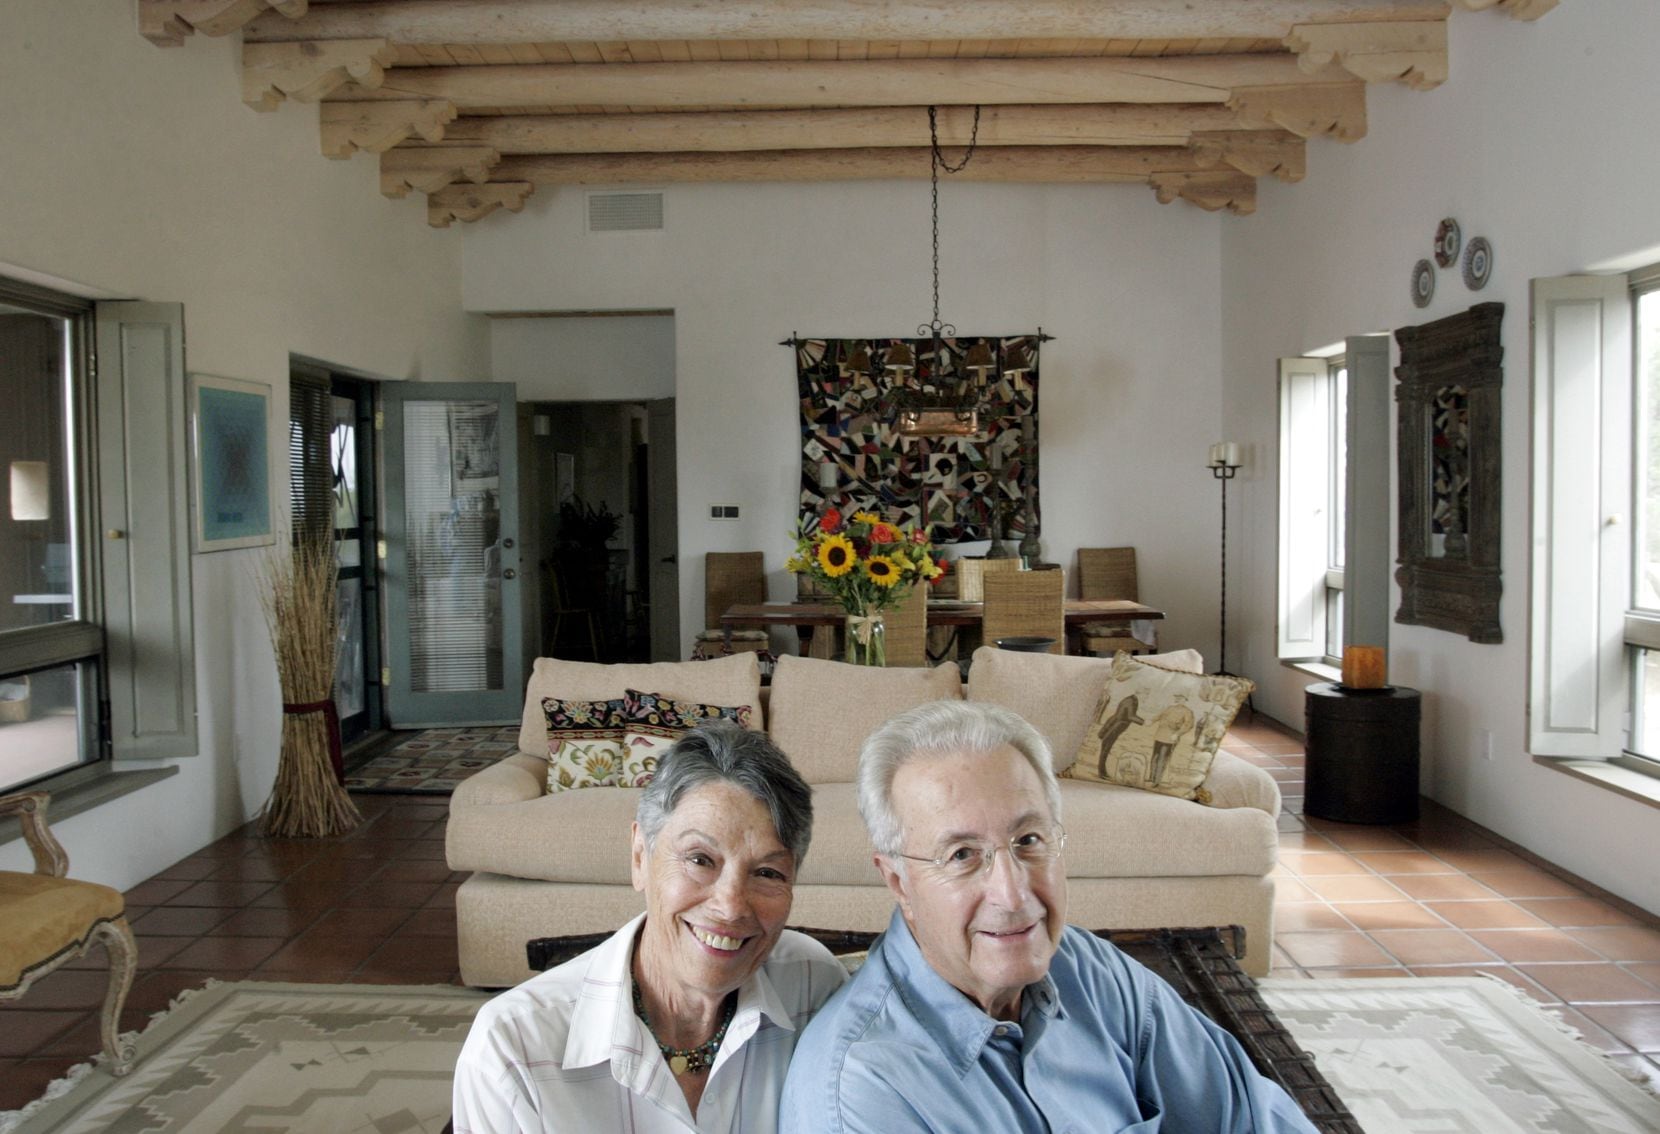 Το 2006, ο Πλάτωνας Καραγάνης (δεξιά) και η σύζυγός του Ντόροθυ στέκονταν στο σαλόνι του σπιτιού τους...